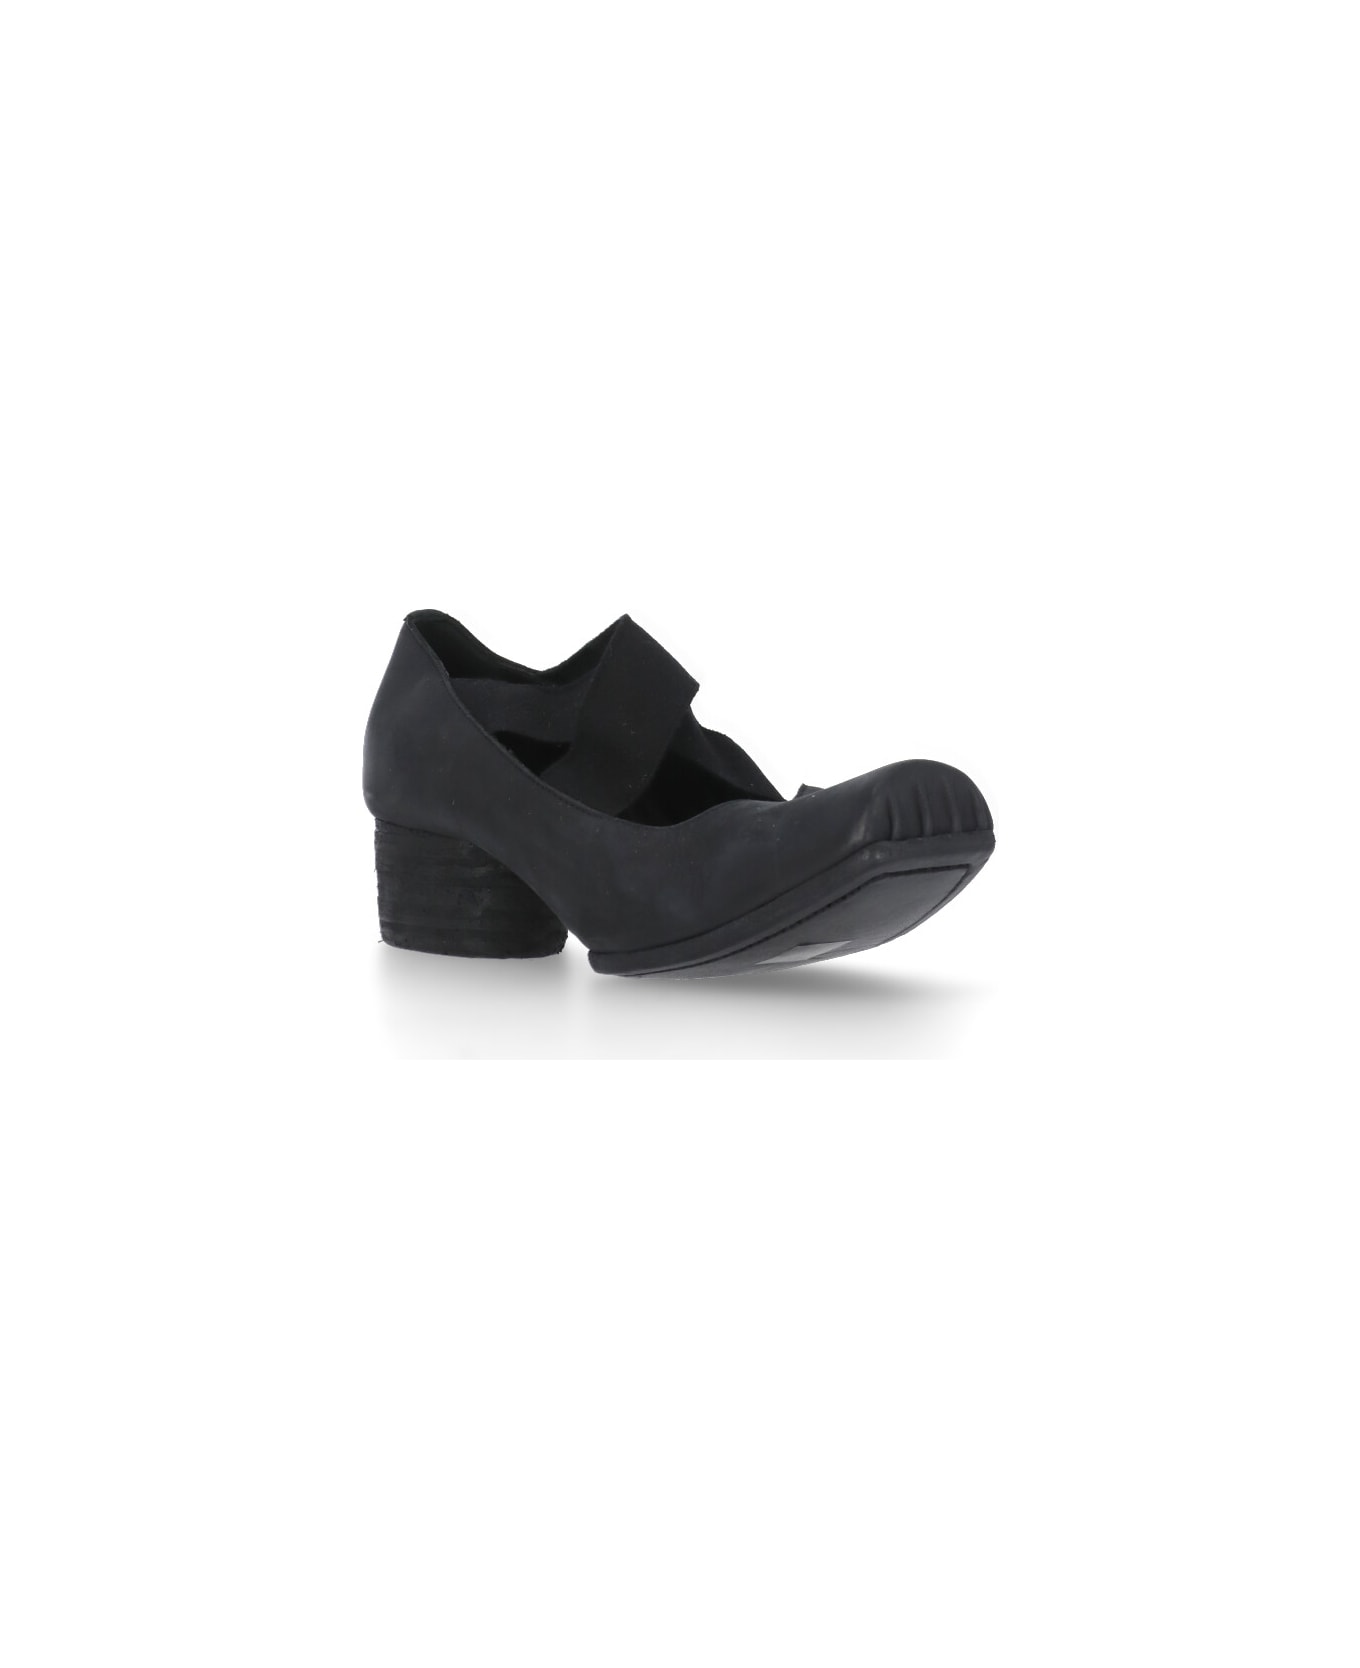 Uma Wang Leather Heeled Shoes - Black